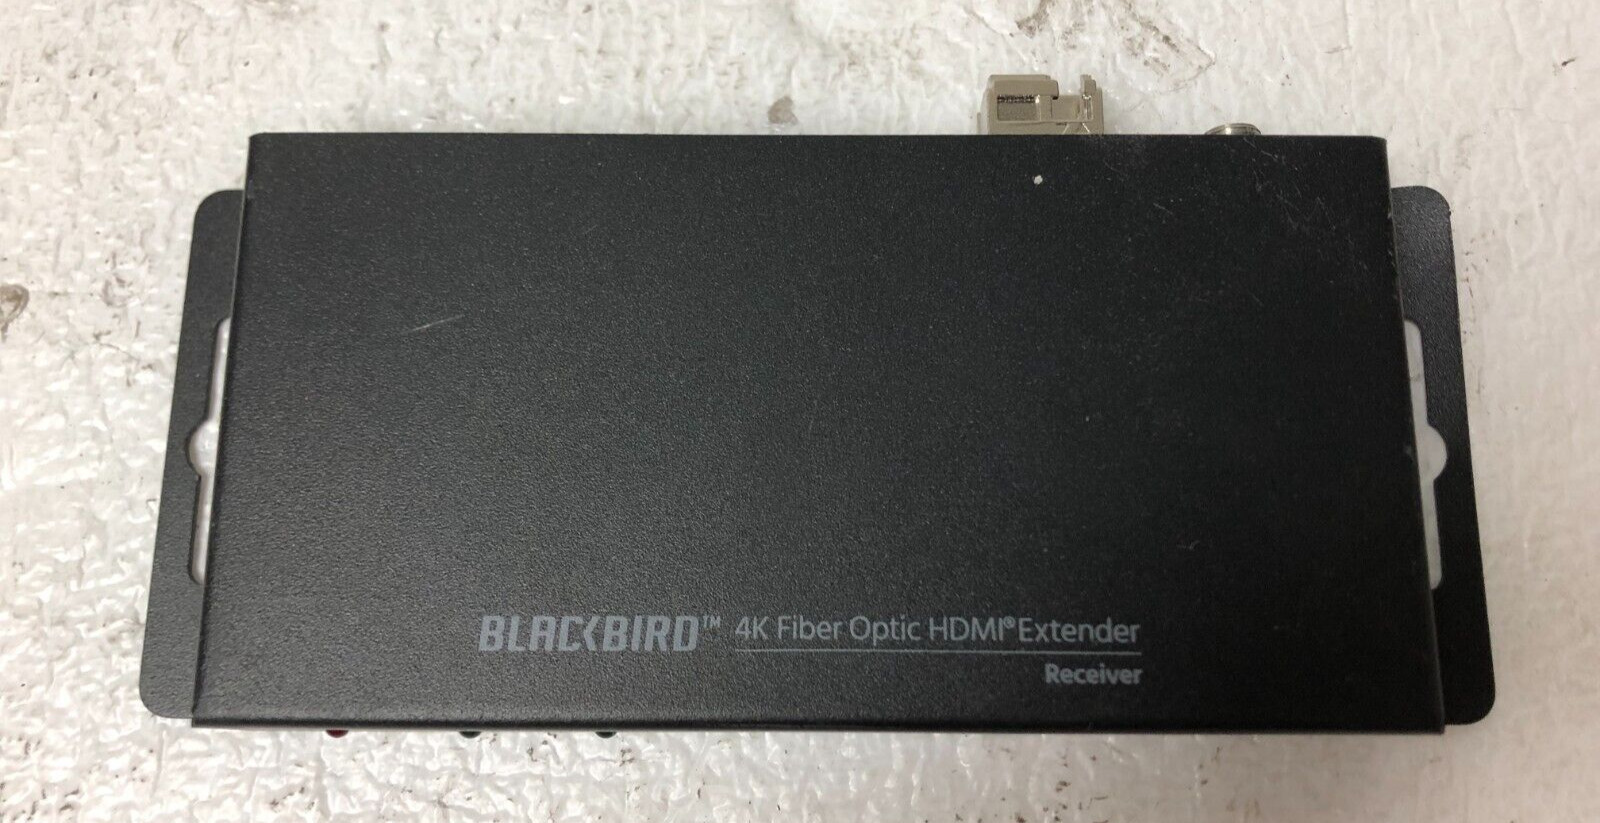 Blackbird 4K Fiber Optic HDMI Extender No Power Supply